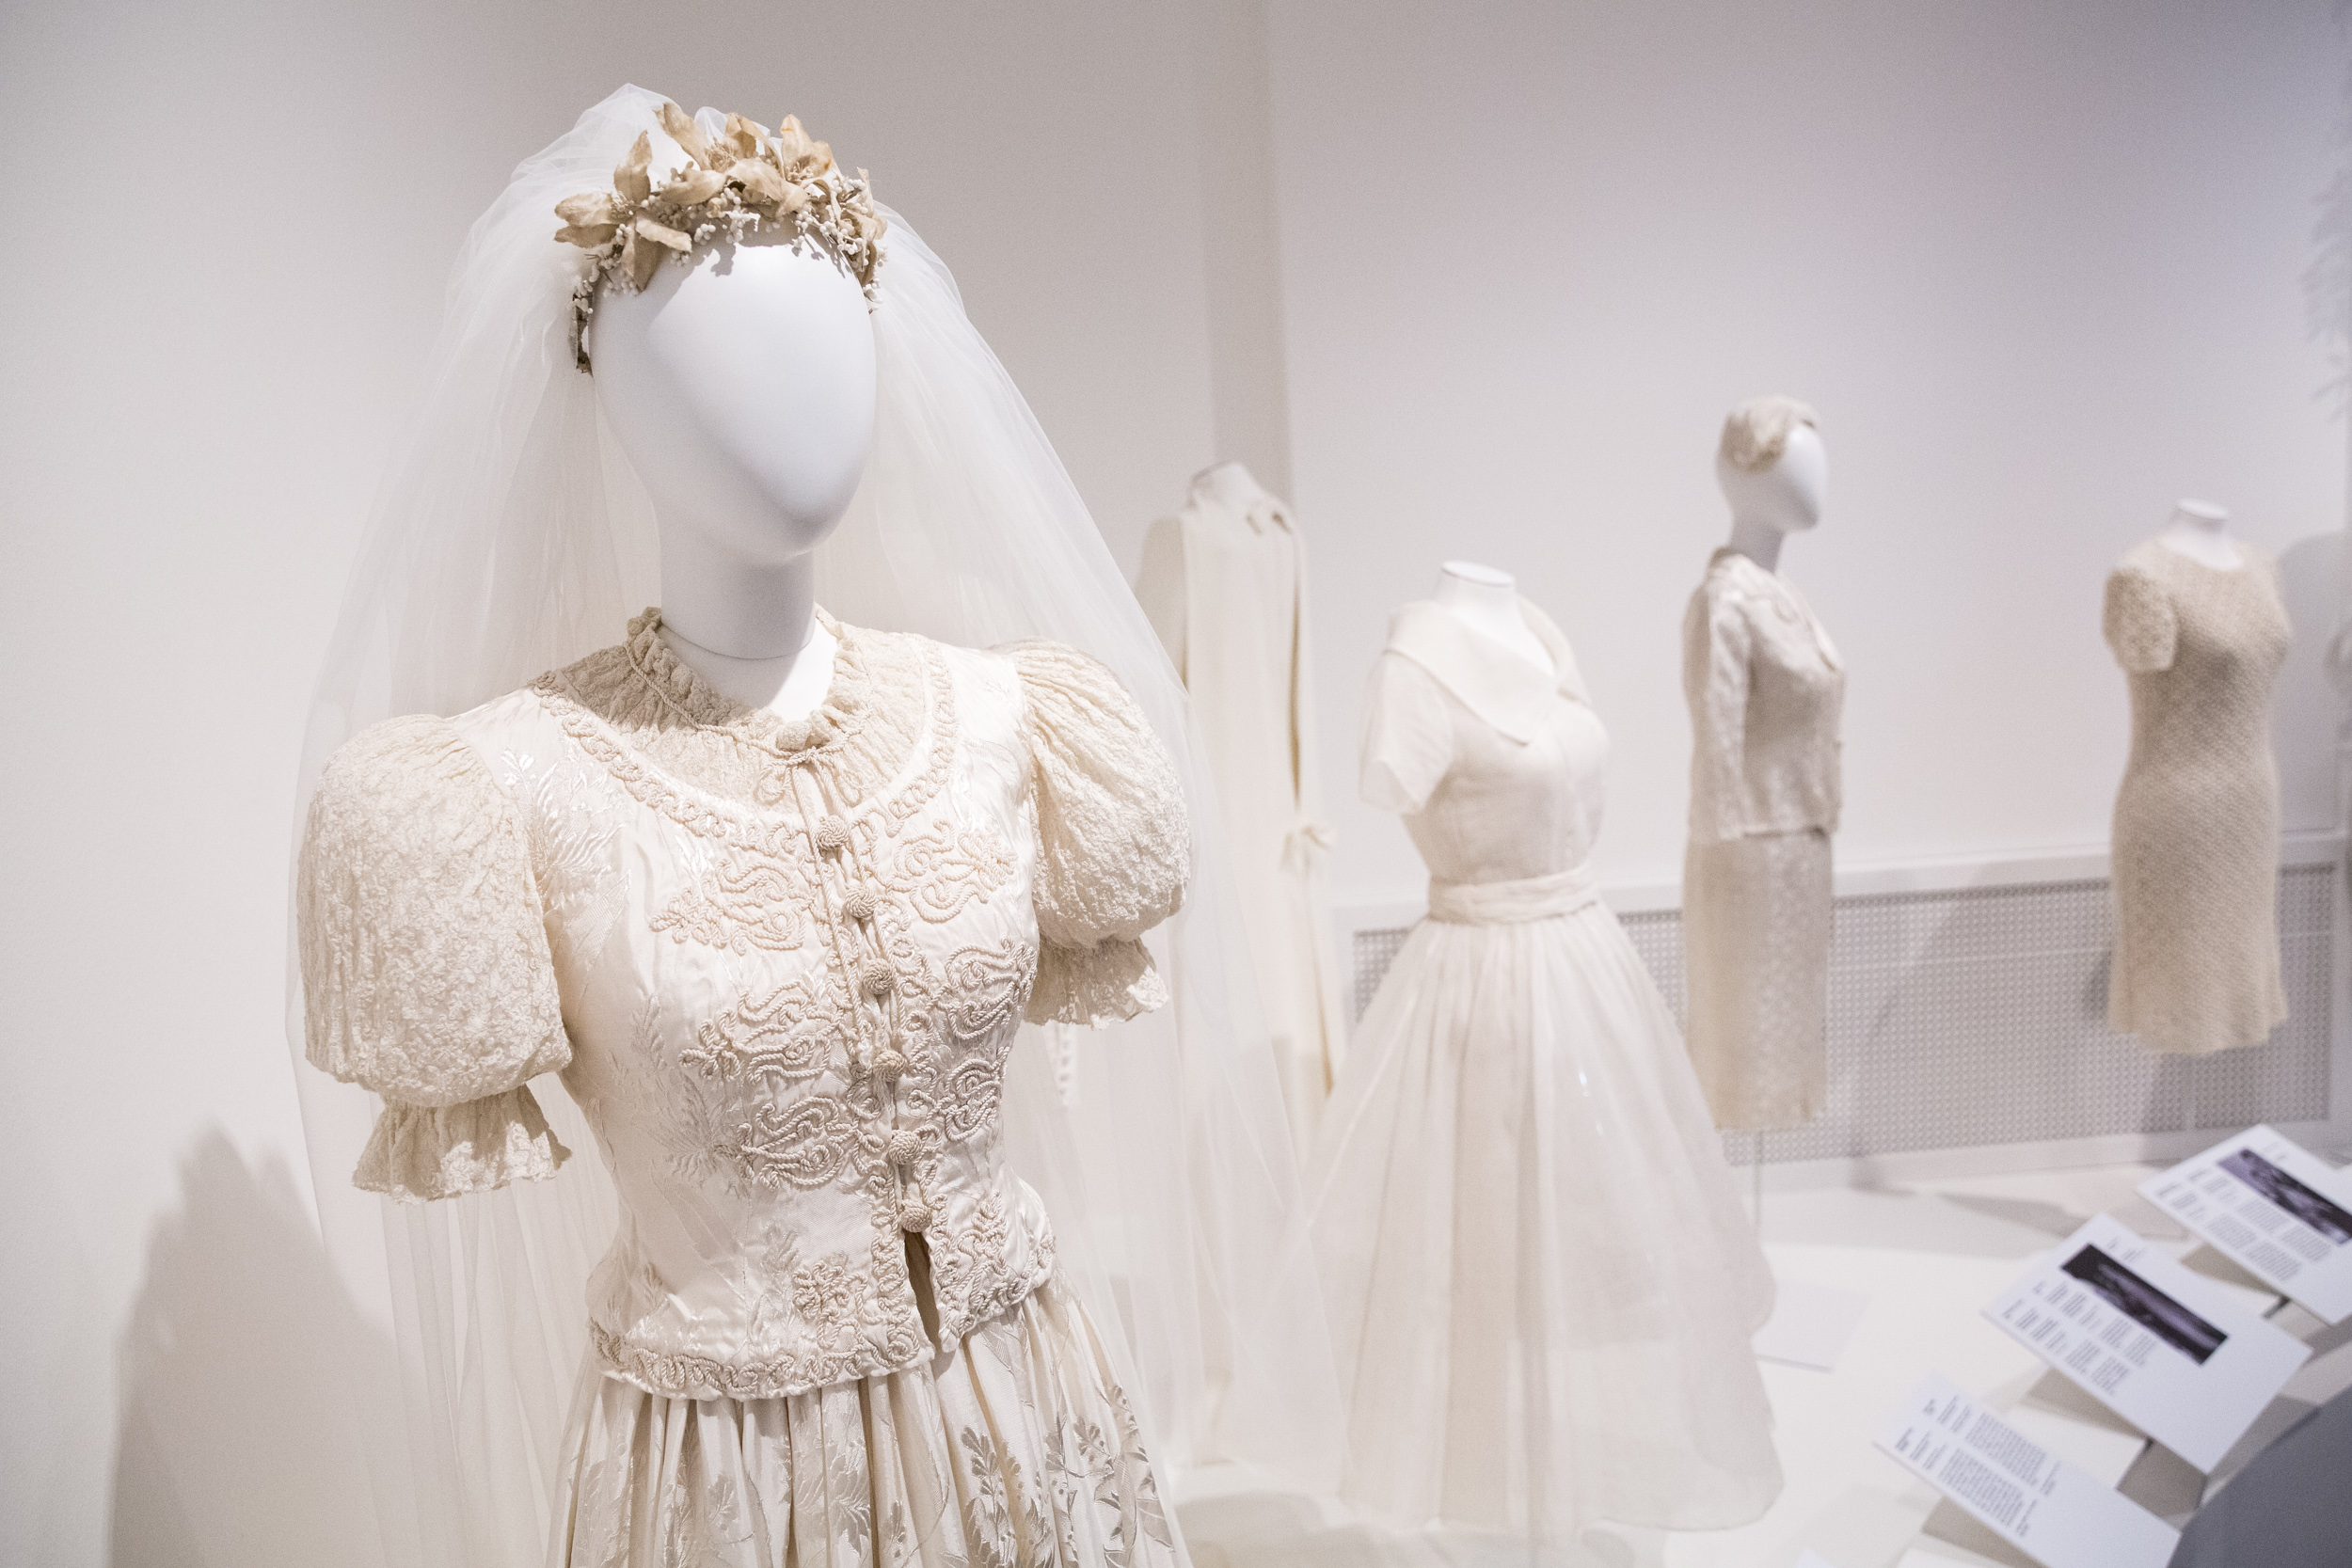 Miről mesél egy menyasszony ruhája? – Megnéztük a Magyar Menyasszony kiállítást a Nemzeti Múzeumban